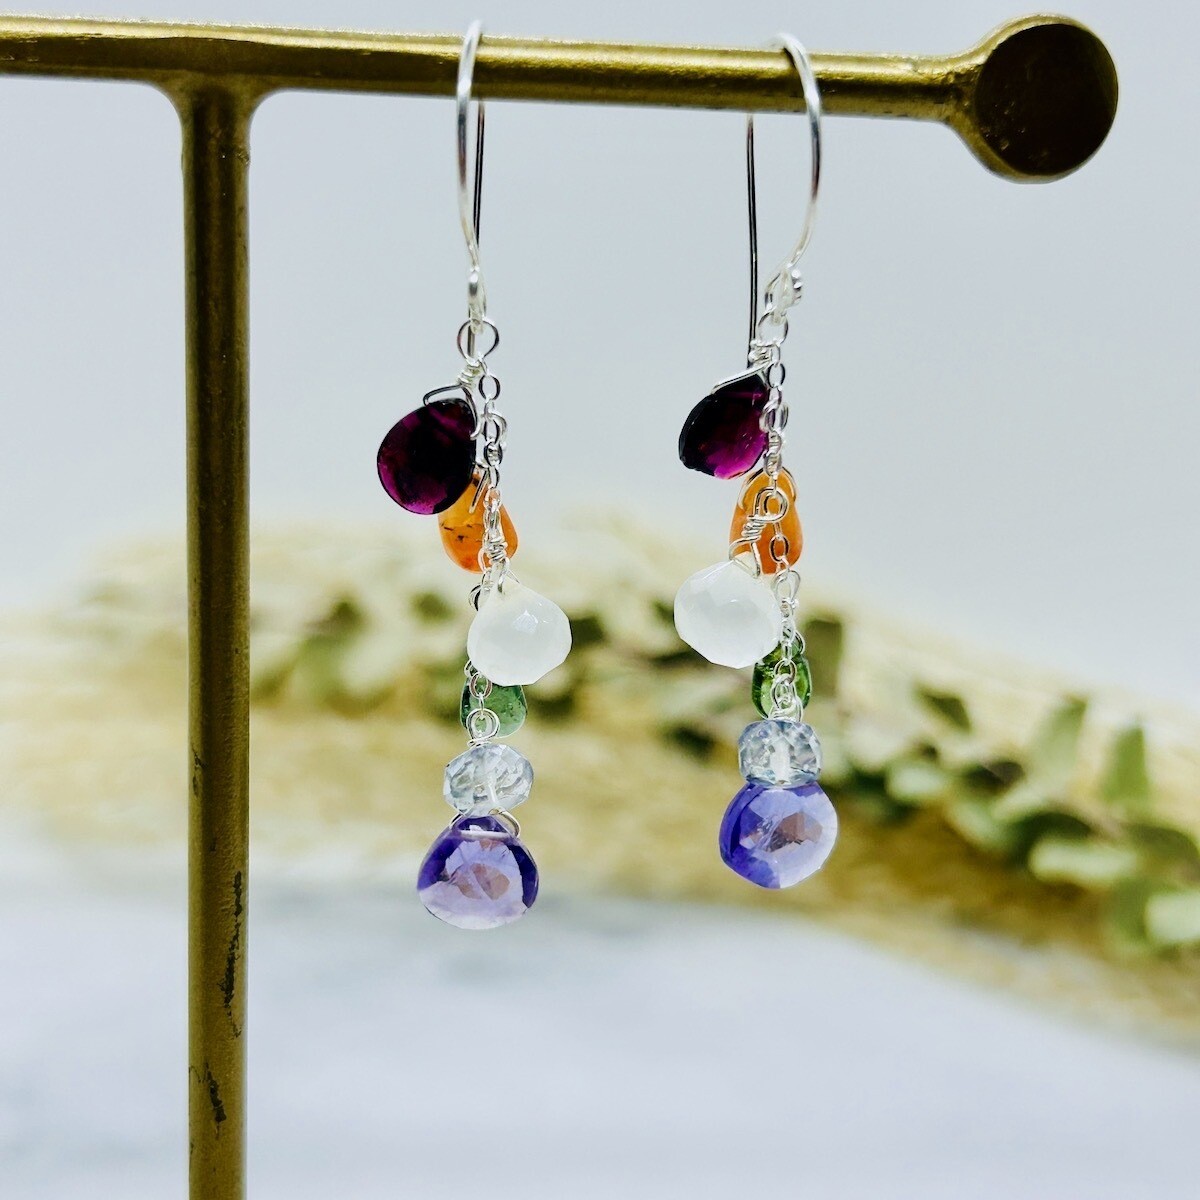 Handmade Earrings with Rainbow Gemstone Cascade